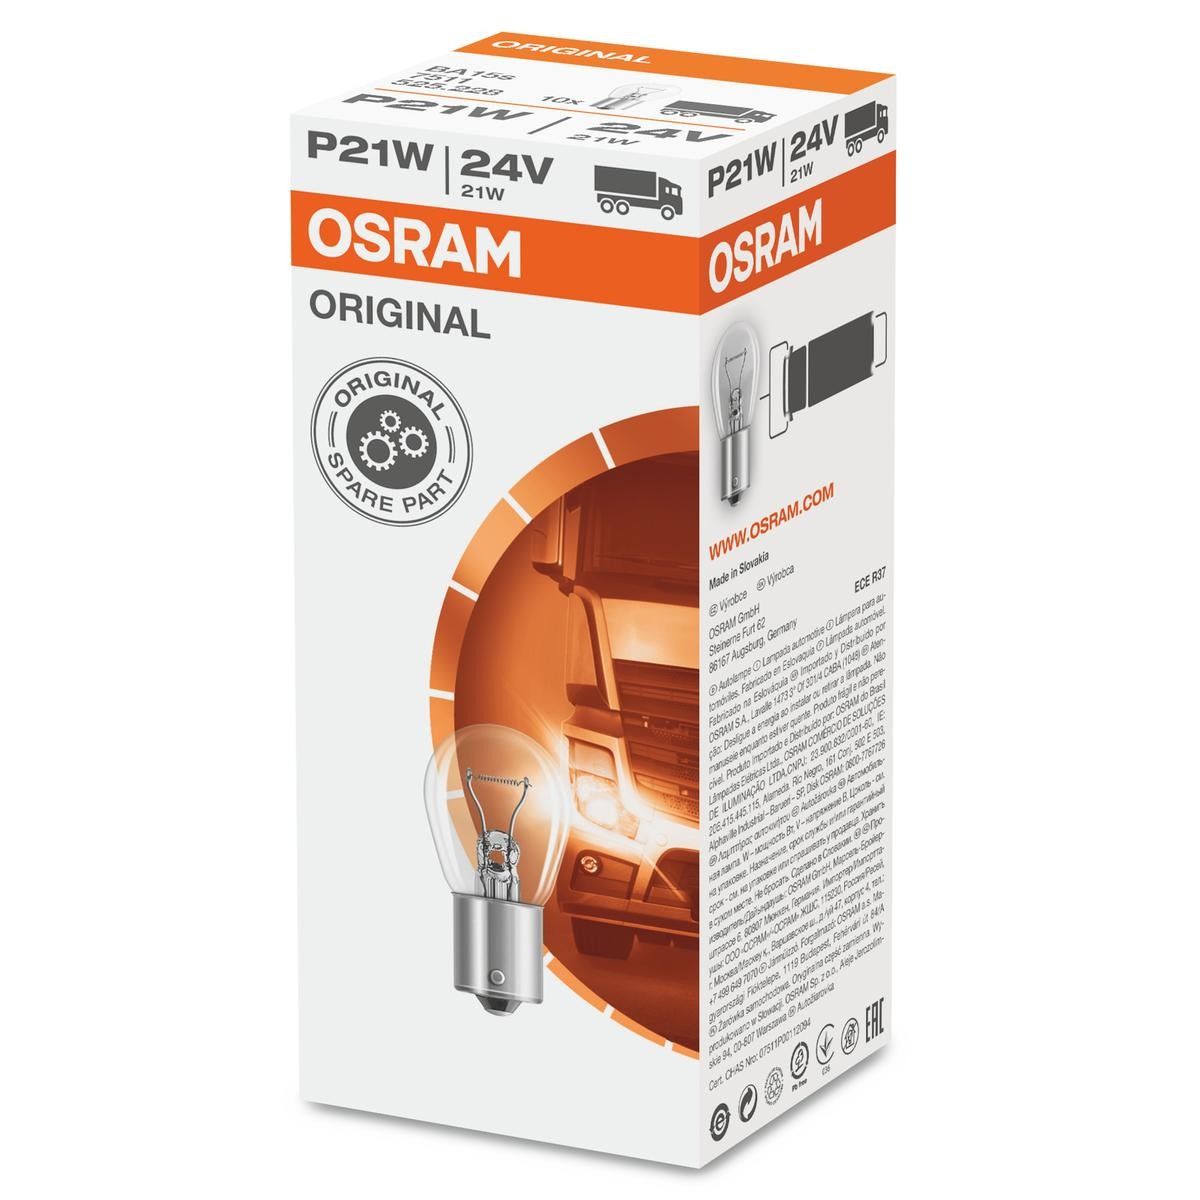 OSRAM 7511 VW Blinkerlampe 24V 21W, P21W